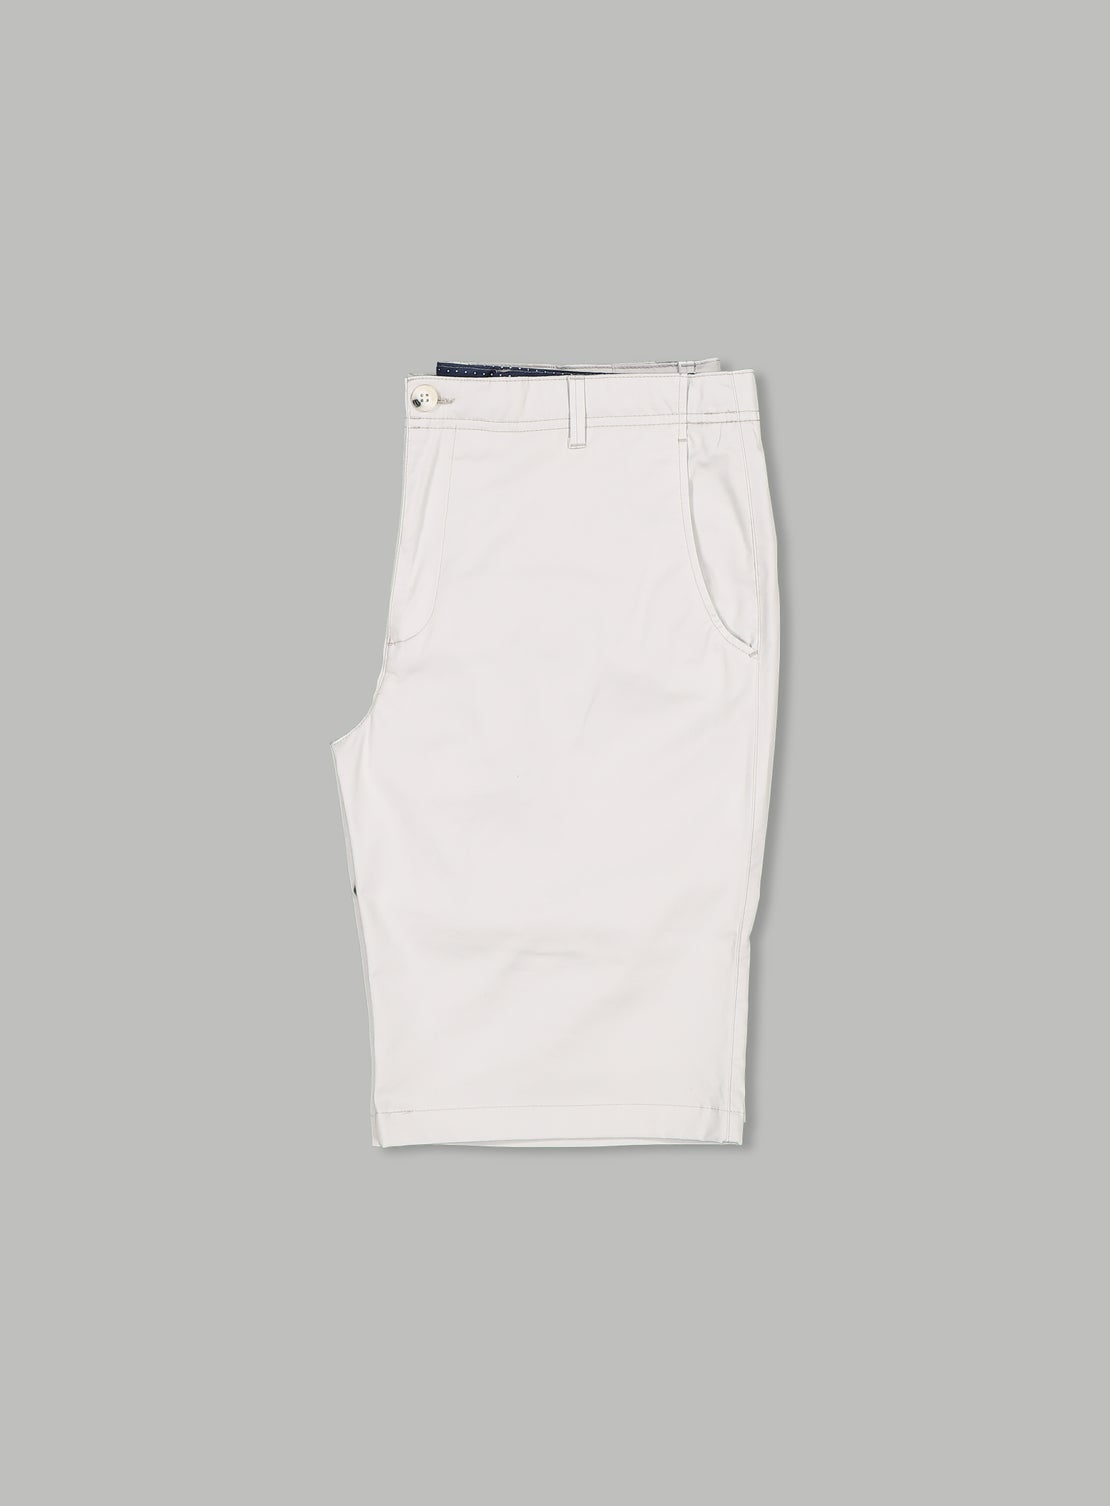 Palmer Grey Shorts